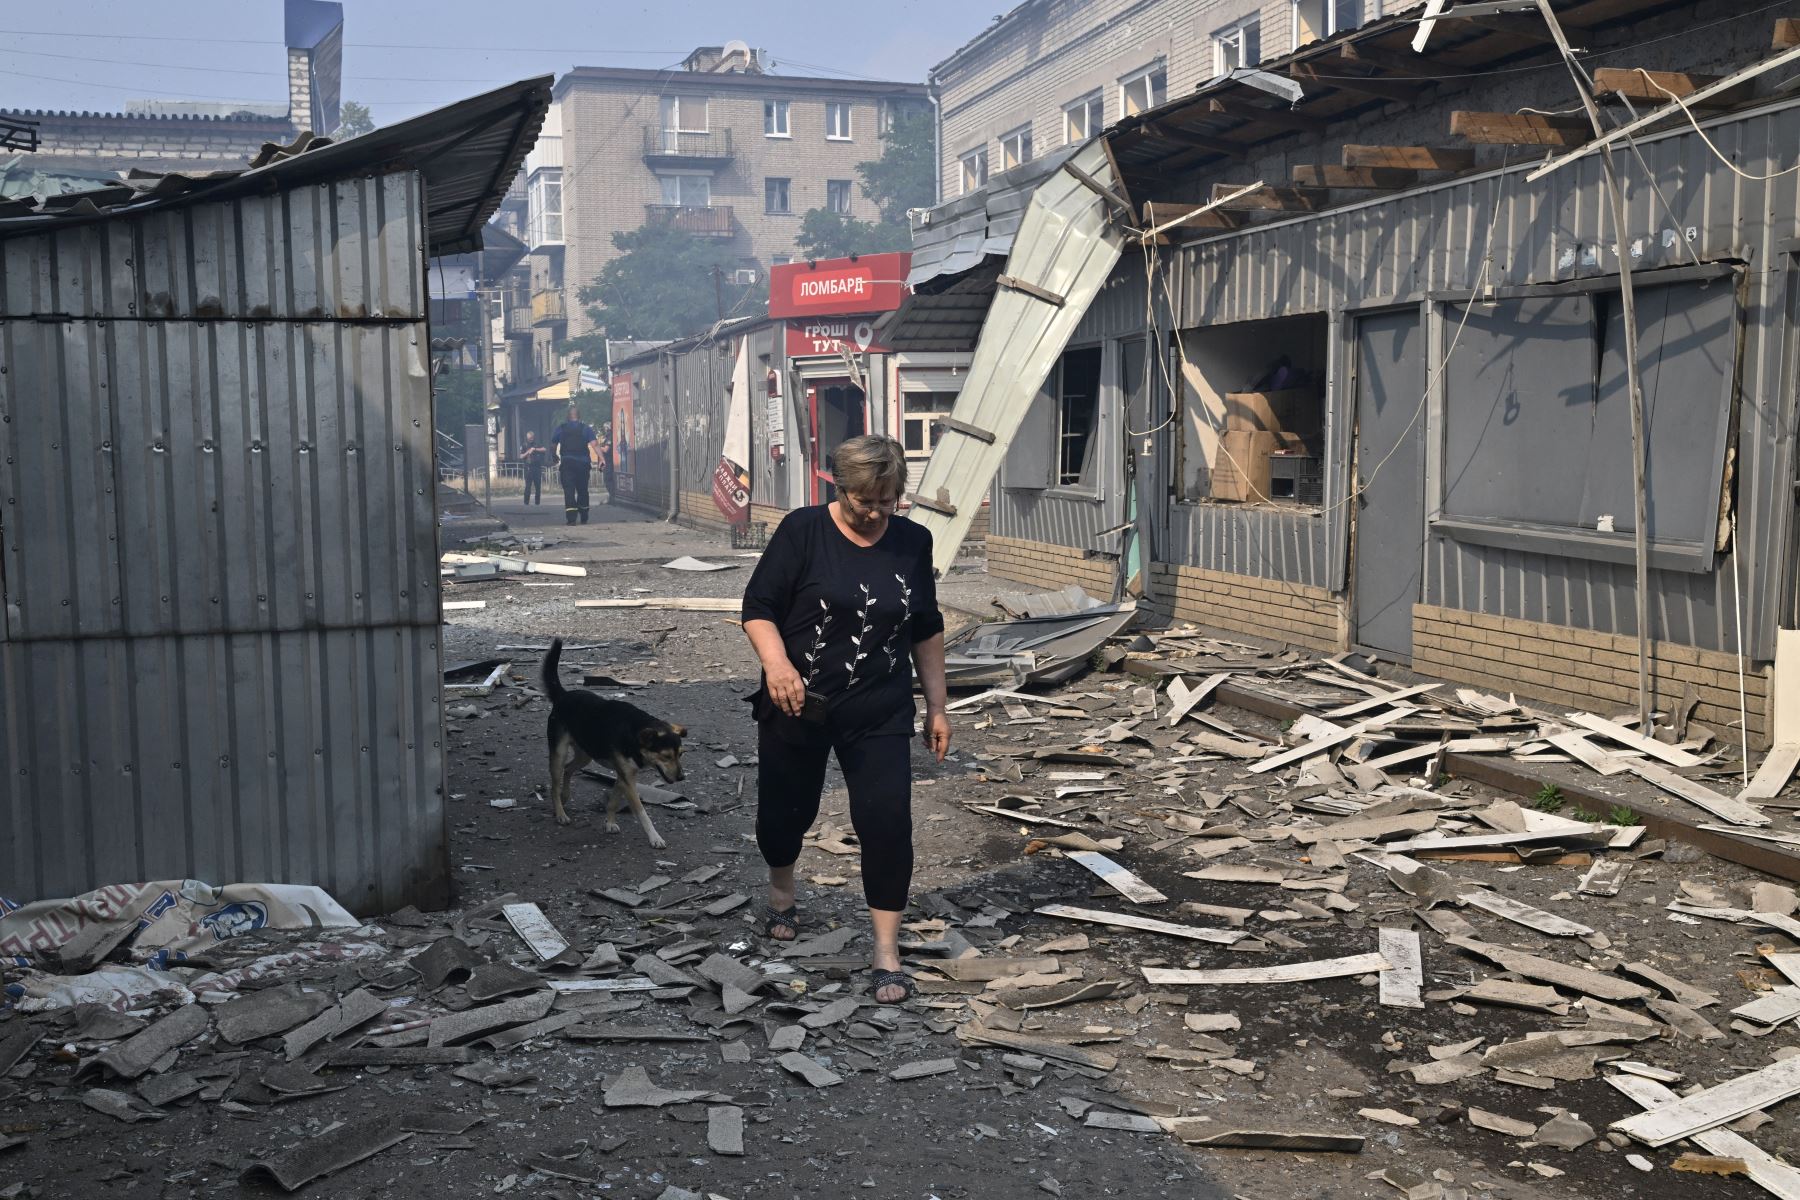 Una mujer pasa por tiendas destruidas en un mercado local después de un ataque con cohetes en la ciudad ucraniana de Sloviansk.
Foto: AFP